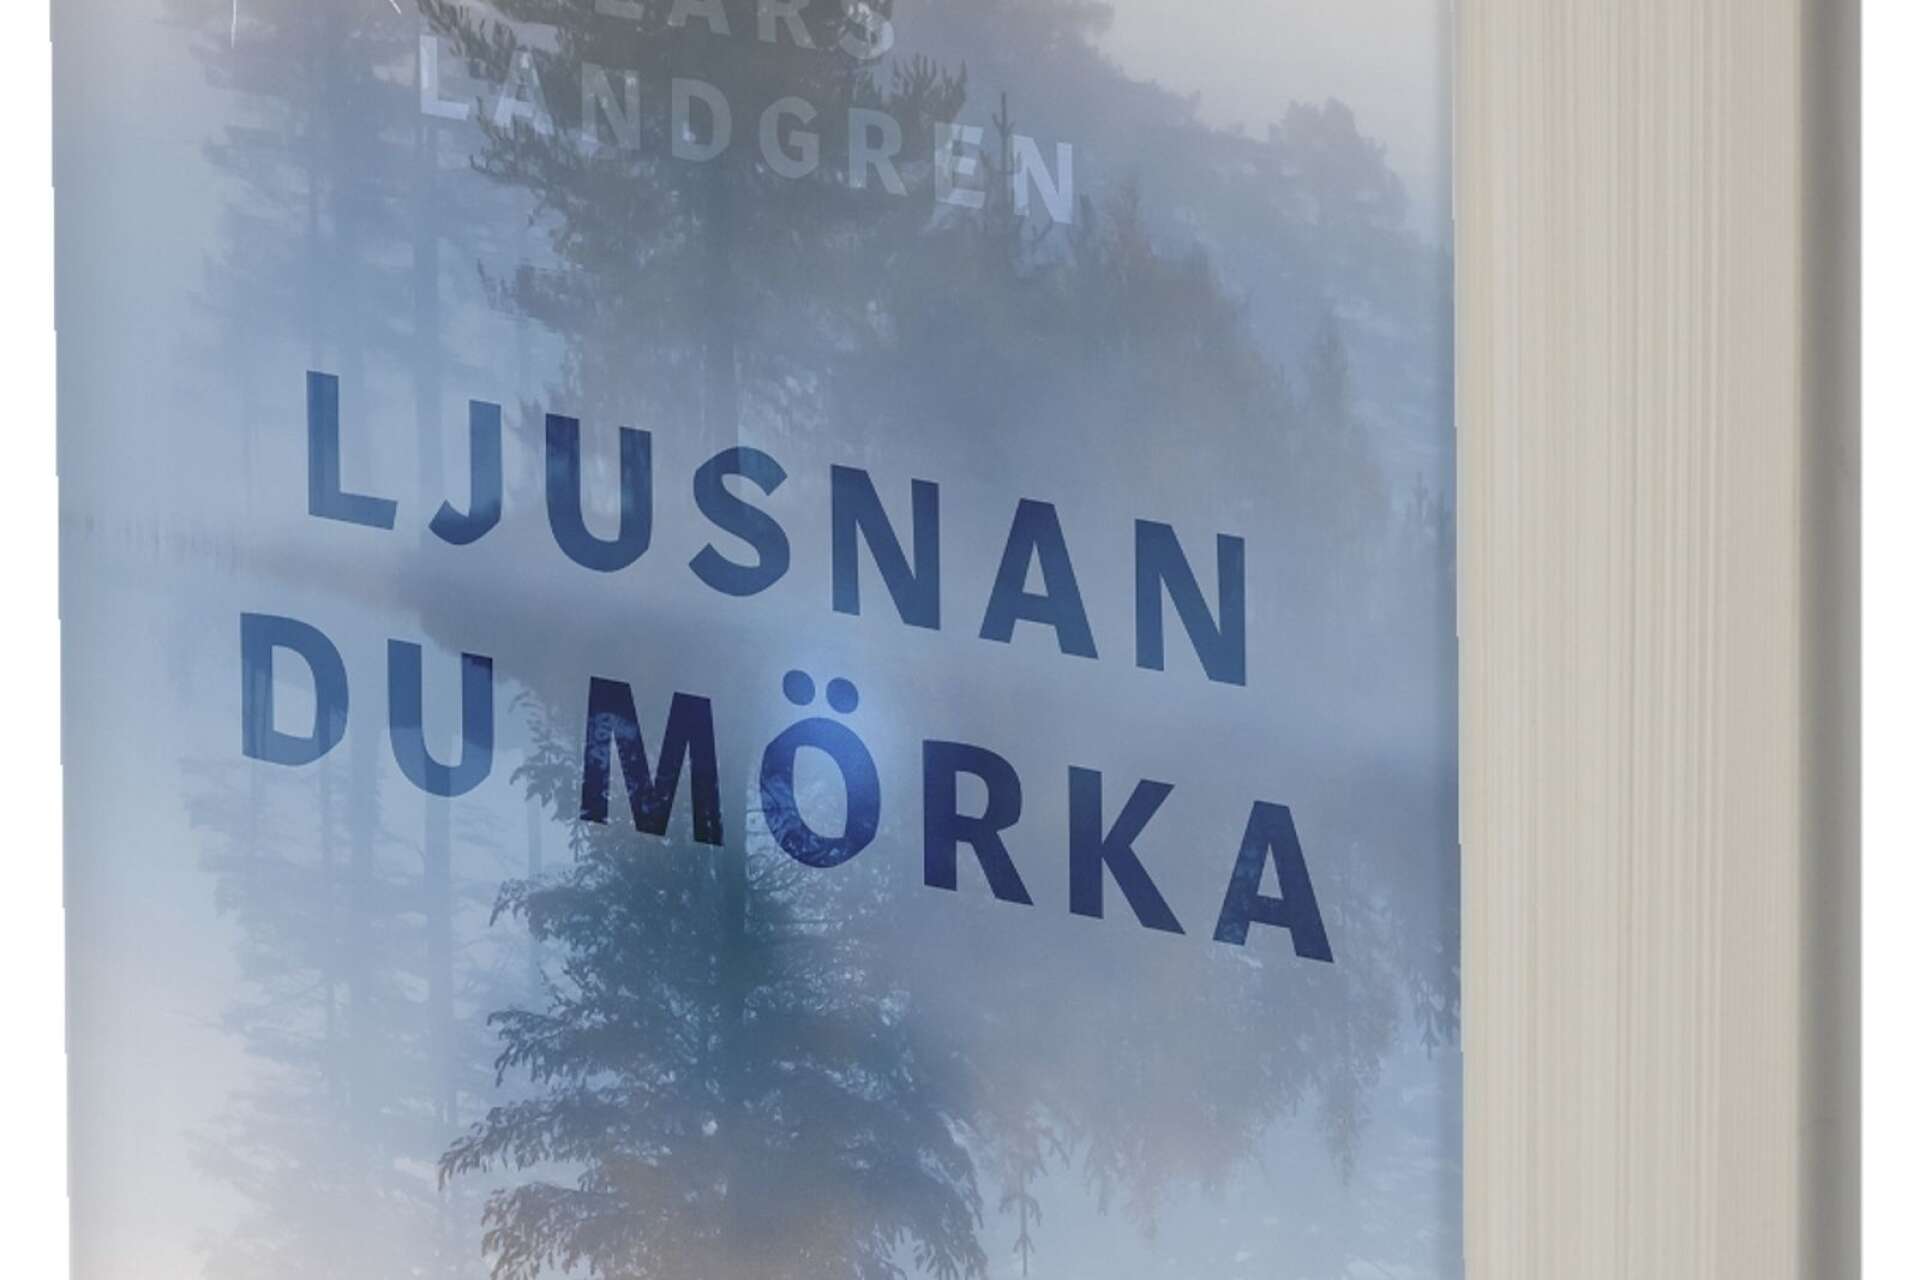 Lars Landgrens bok har nyss släppts och är hans allra första roman. Han blev antagen på sitt första försök som romanförfattare!